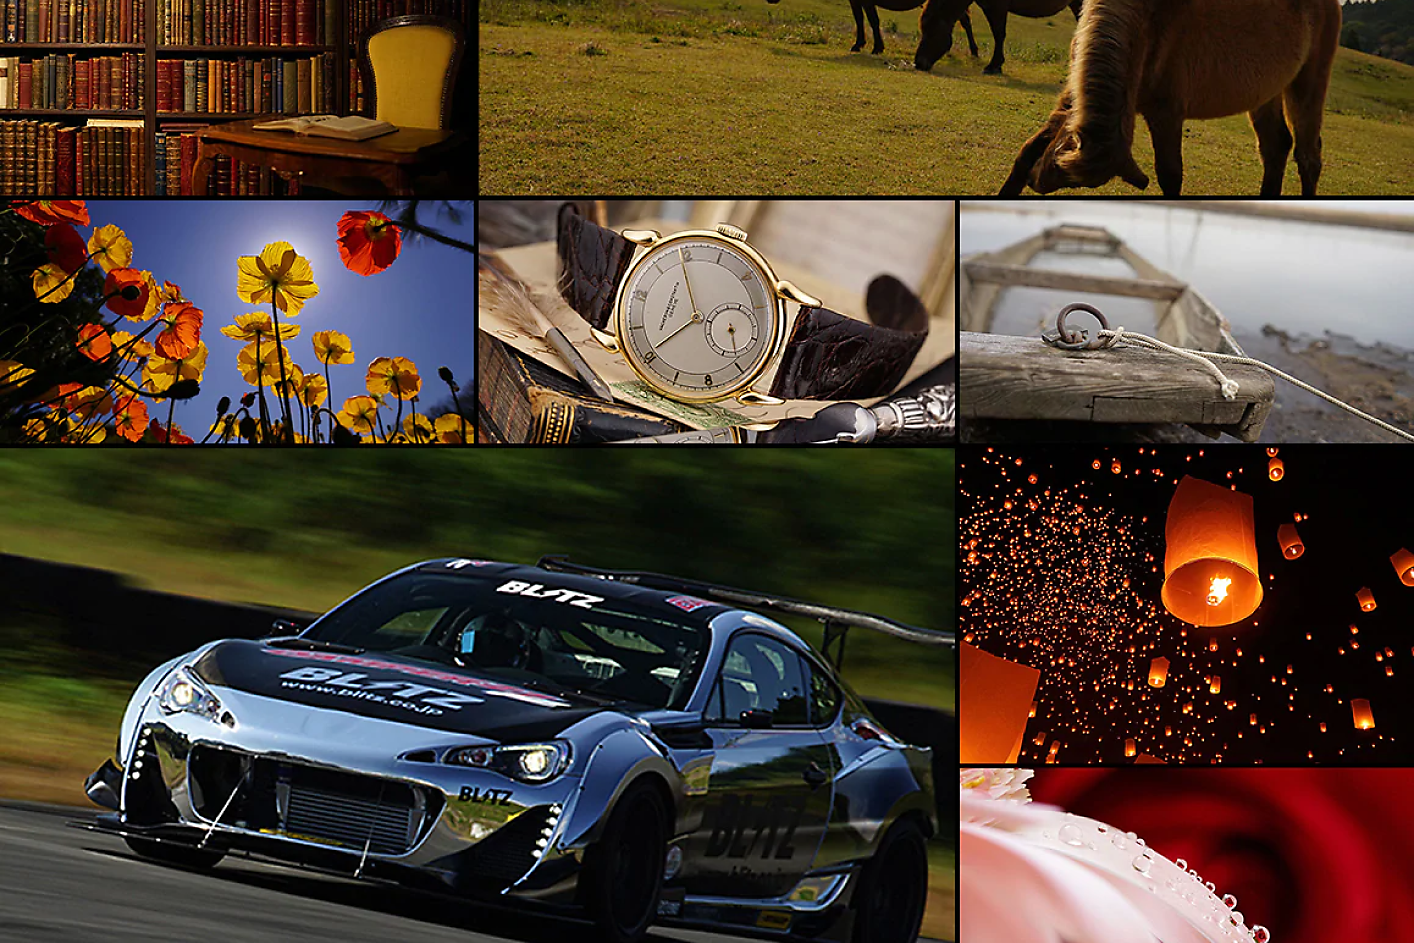 Colaj colorat cu opt imagini, inclusiv o mașină de curse, un cal, un ceas și floriColaj colorat cu opt imagini, inclusiv o mașină de curse, un cal, un ceas și flori